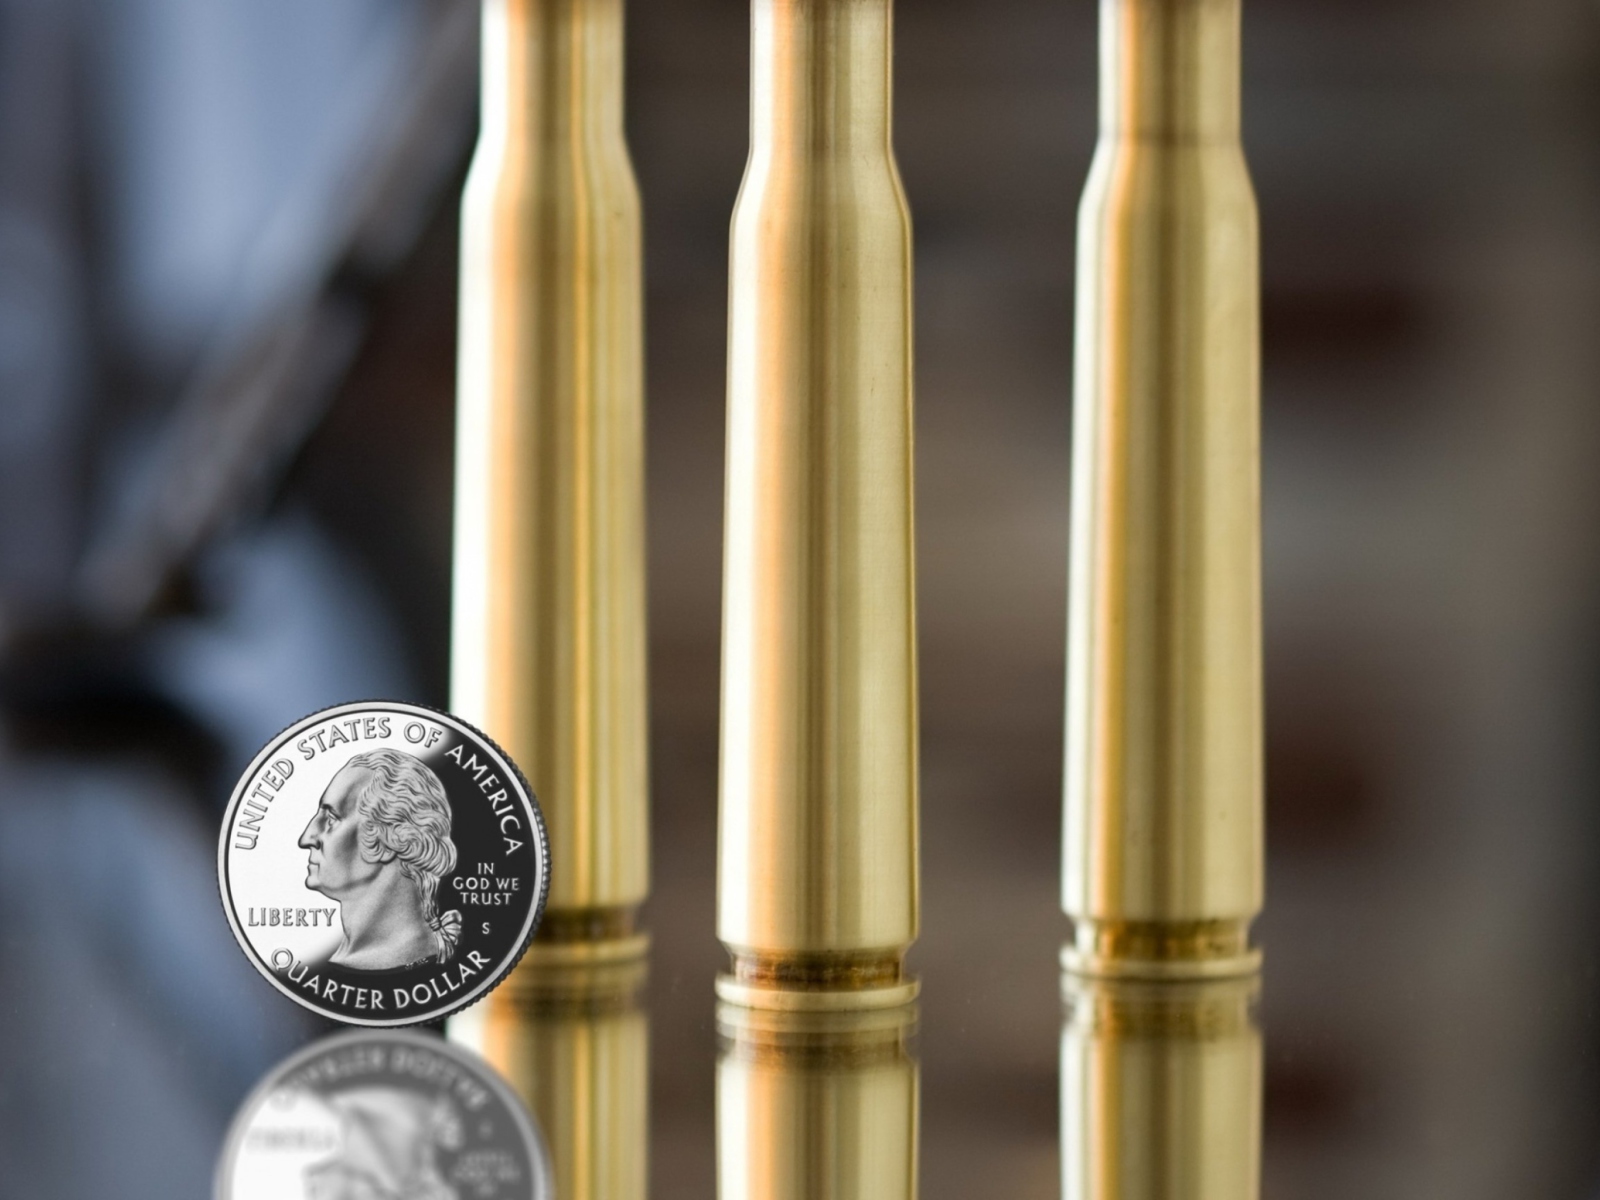 Sfondi Bullets And Quarter Dollar 1600x1200